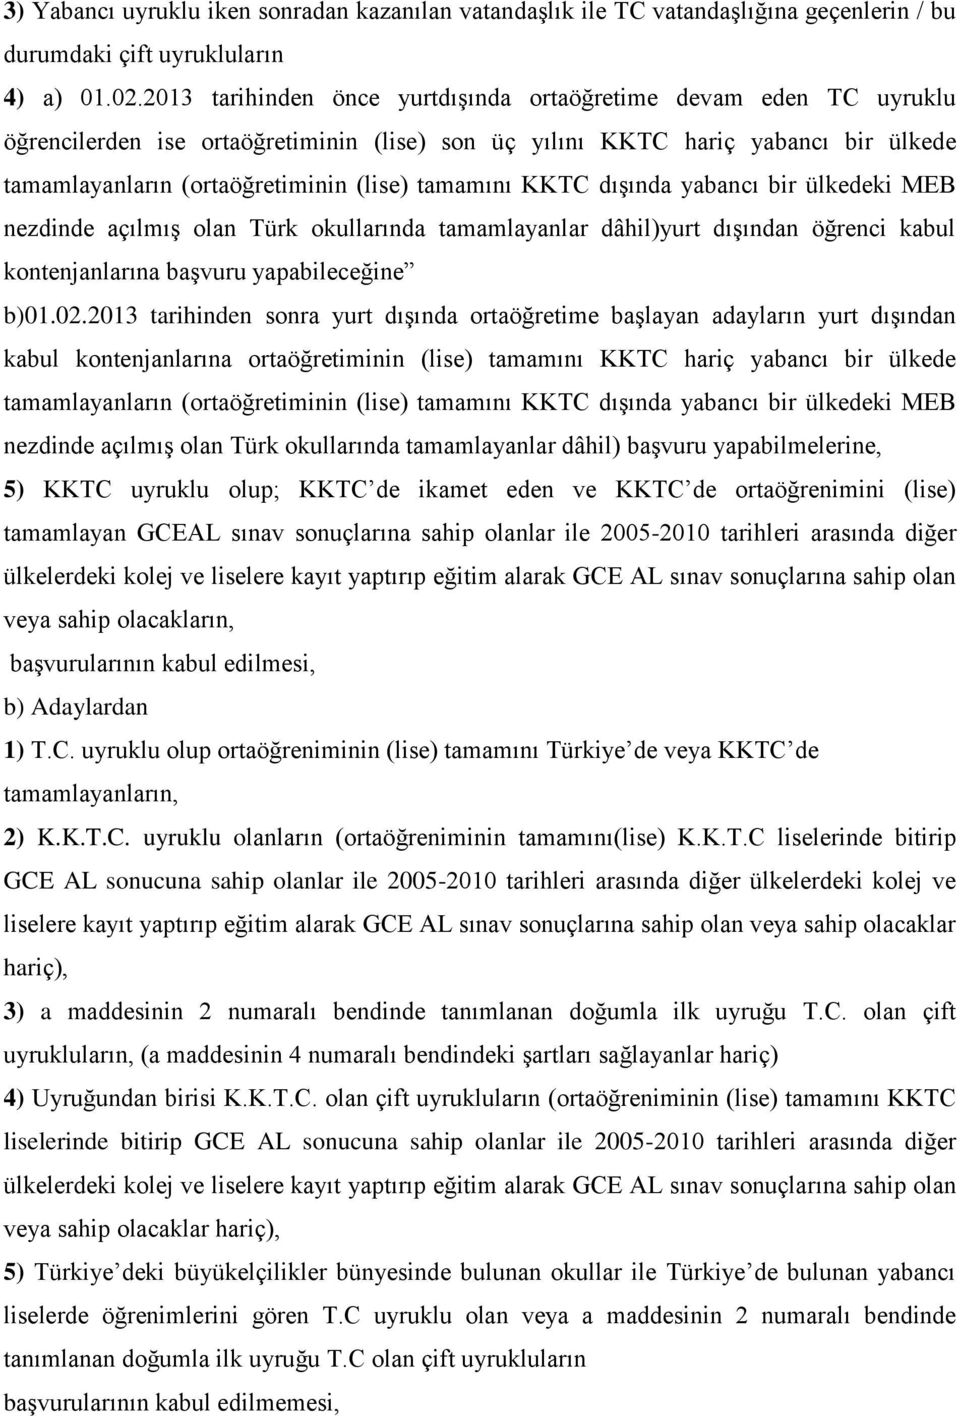 tamamını KKTC dışında yabancı bir ülkedeki MEB nezdinde açılmış olan Türk okullarında tamamlayanlar dâhil)yurt dışından öğrenci kabul kontenjanlarına başvuru yapabileceğine b)01.02.